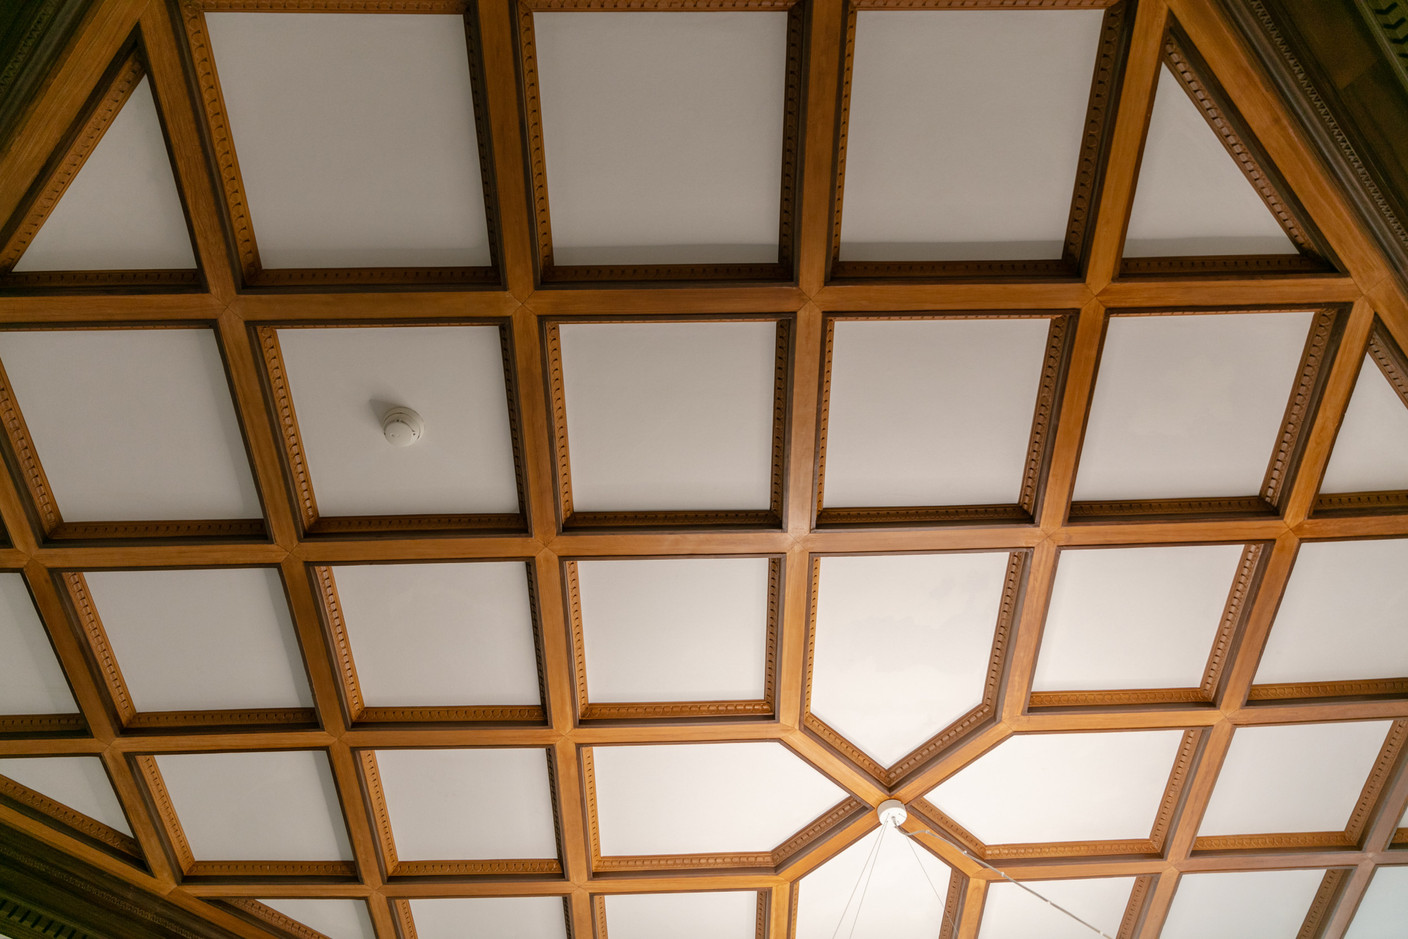 Décor de plafond en bois. (Photo: Romain Gamba/Maison Moderne)